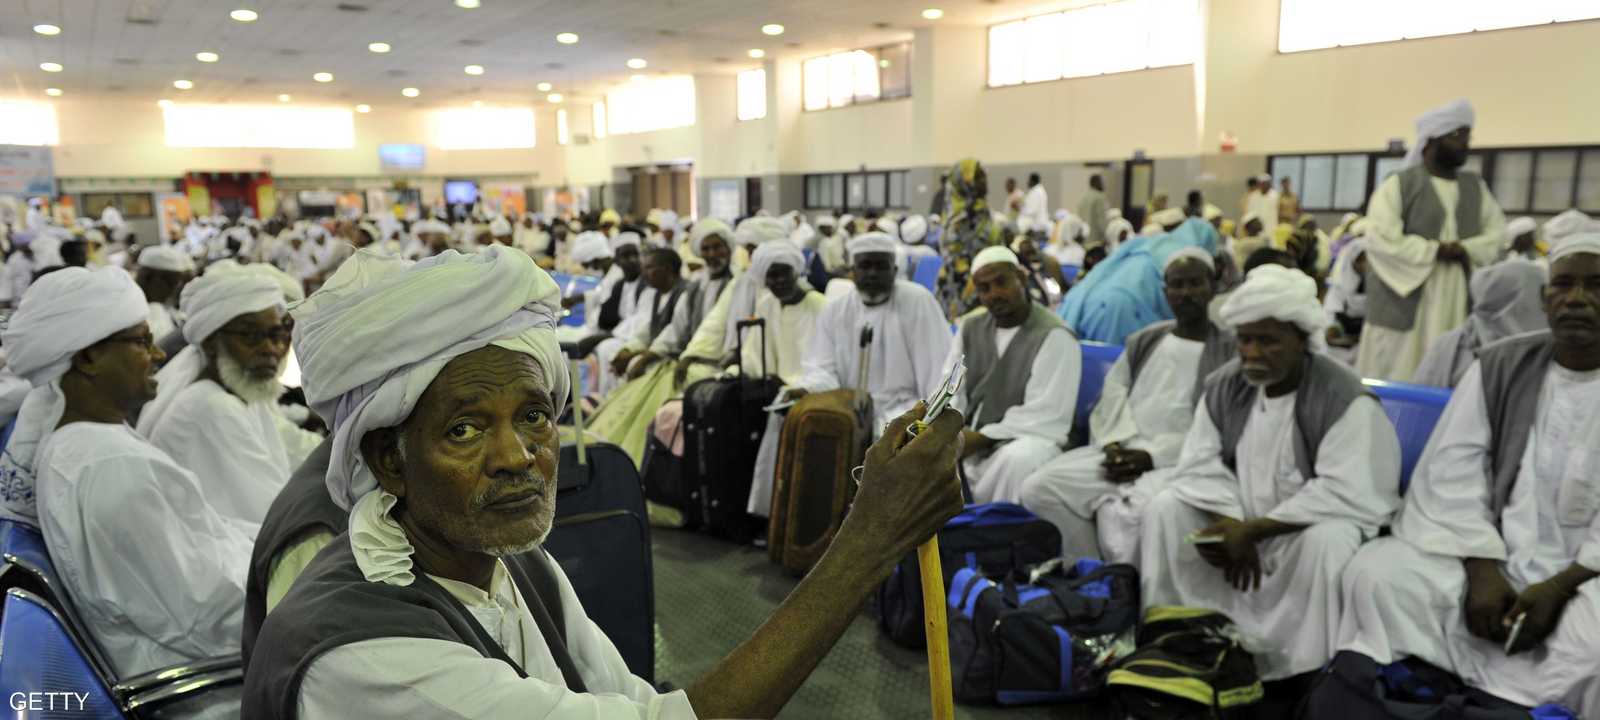 عدد من الحجاج السودانيين لدى وصولهم ميناء جدة